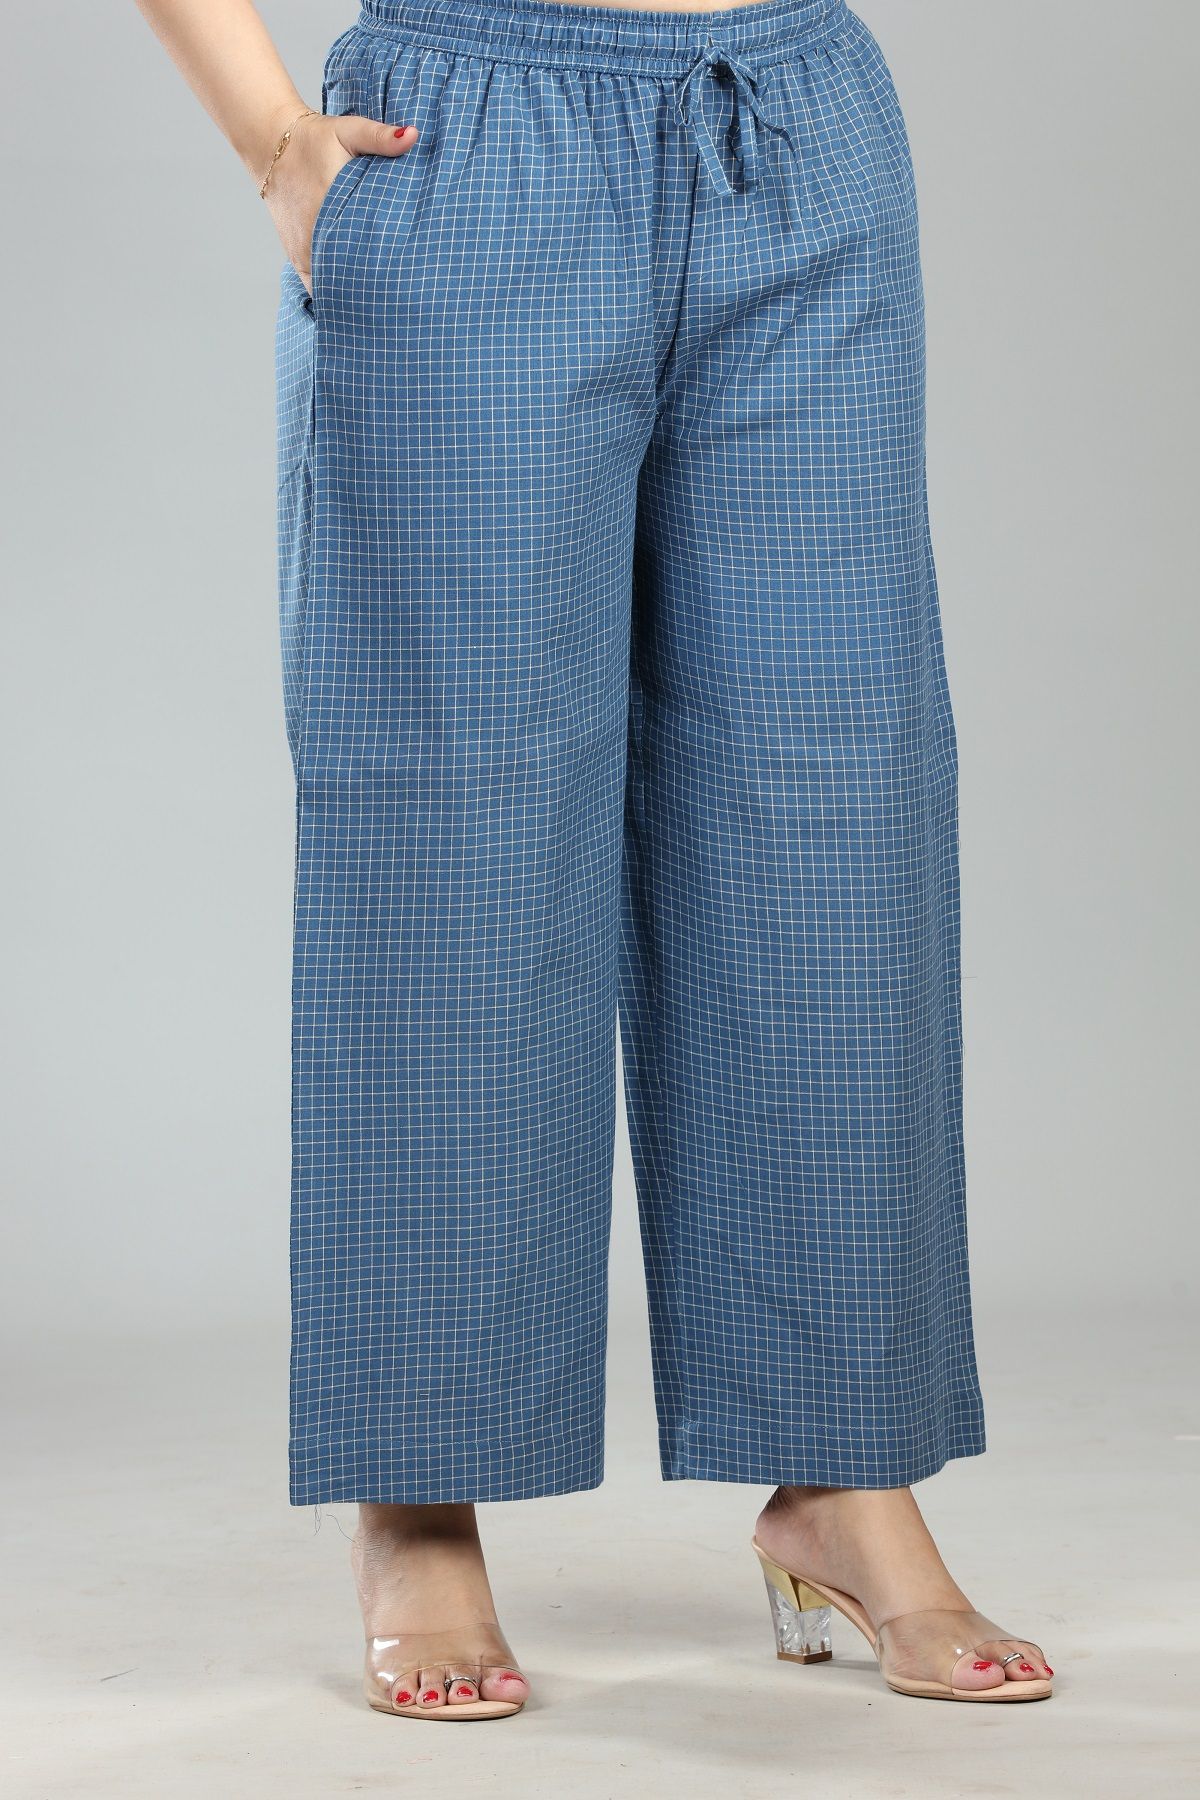 Madhu Navy Blue Cotton Pant